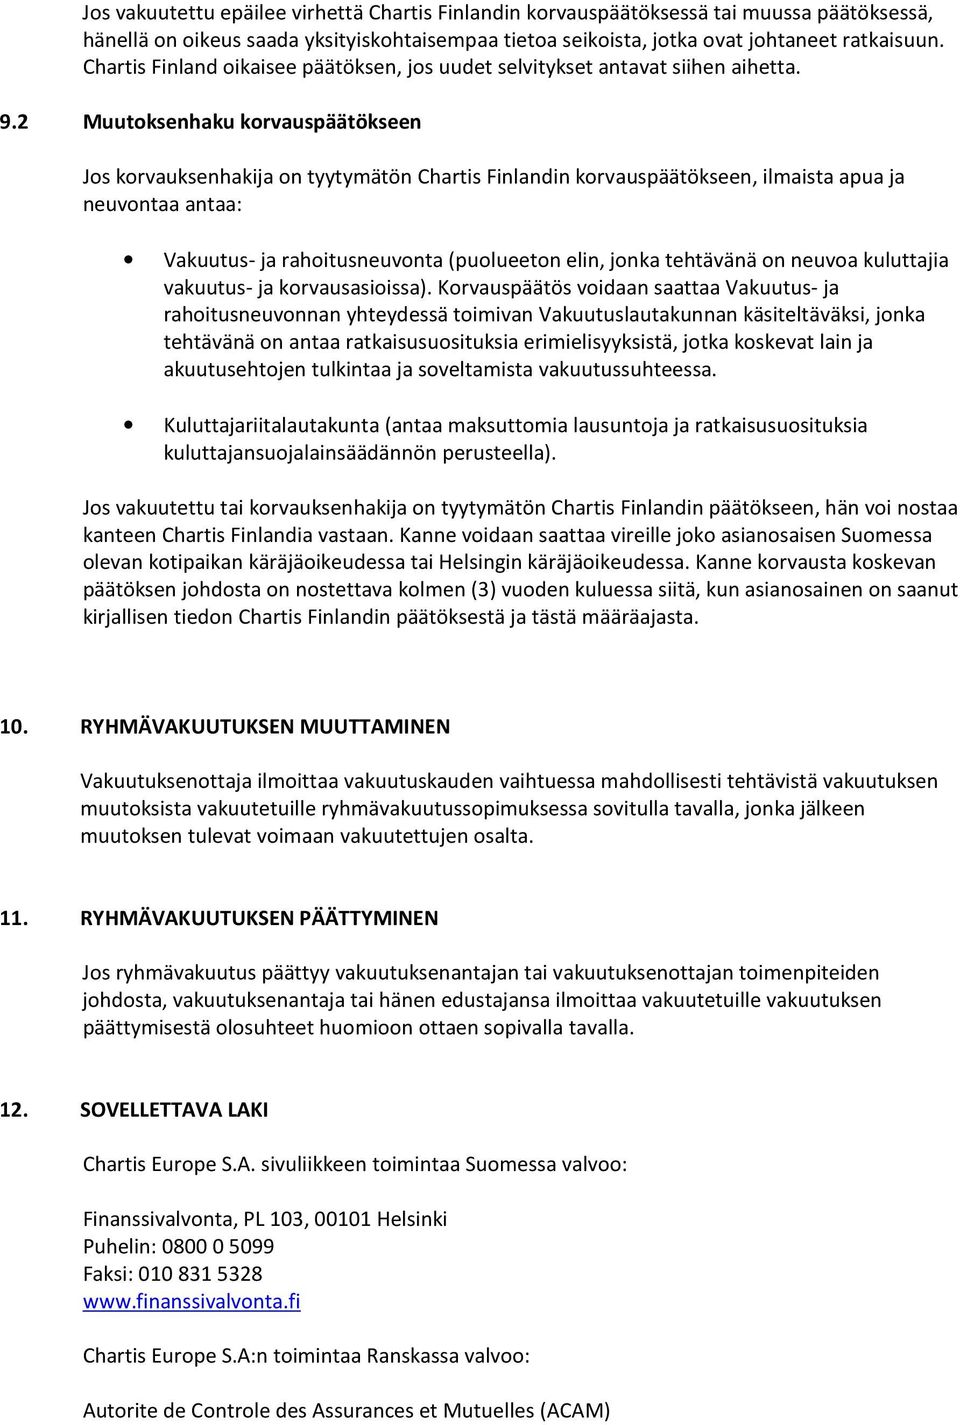 2 Muutoksenhaku korvauspäätökseen Jos korvauksenhakija on tyytymätön Chartis Finlandin korvauspäätökseen, ilmaista apua ja neuvontaa antaa: Vakuutus- ja rahoitusneuvonta (puolueeton elin, jonka